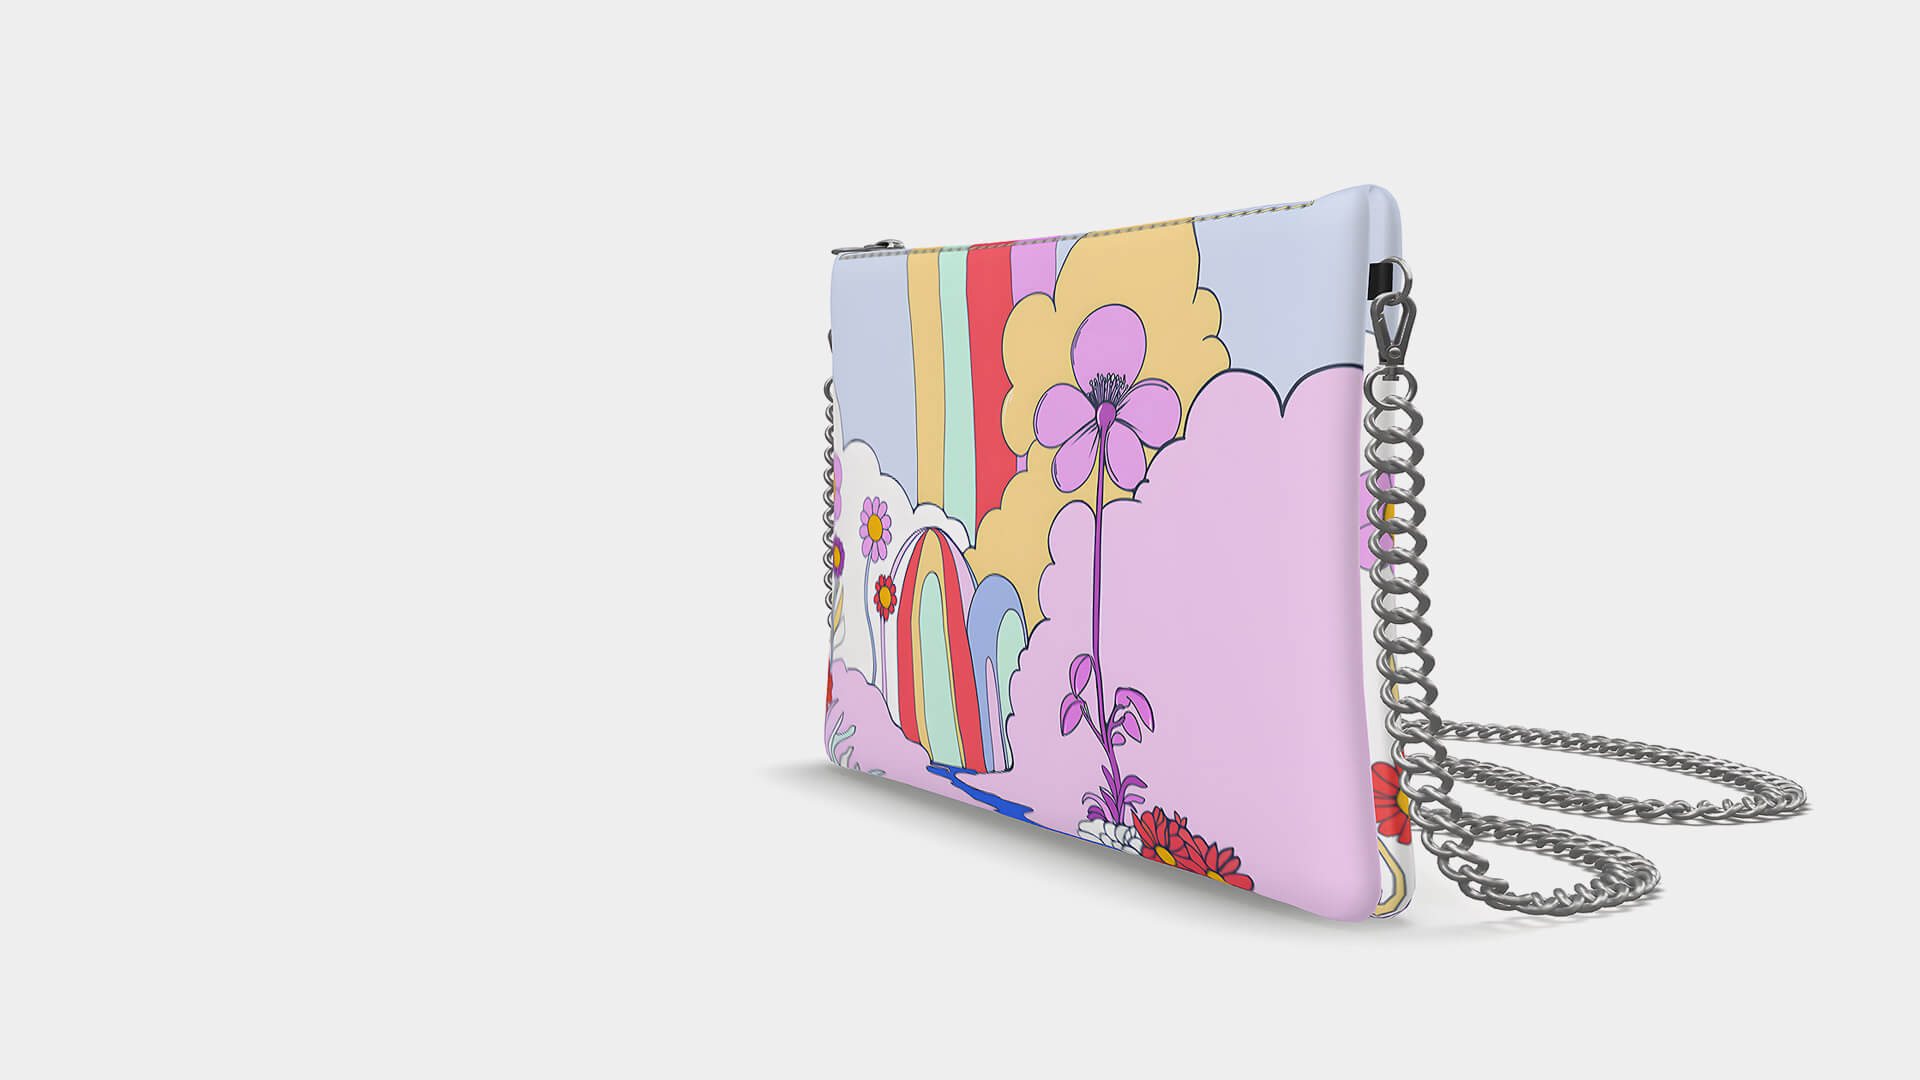 Crossbody handbag with illustration 